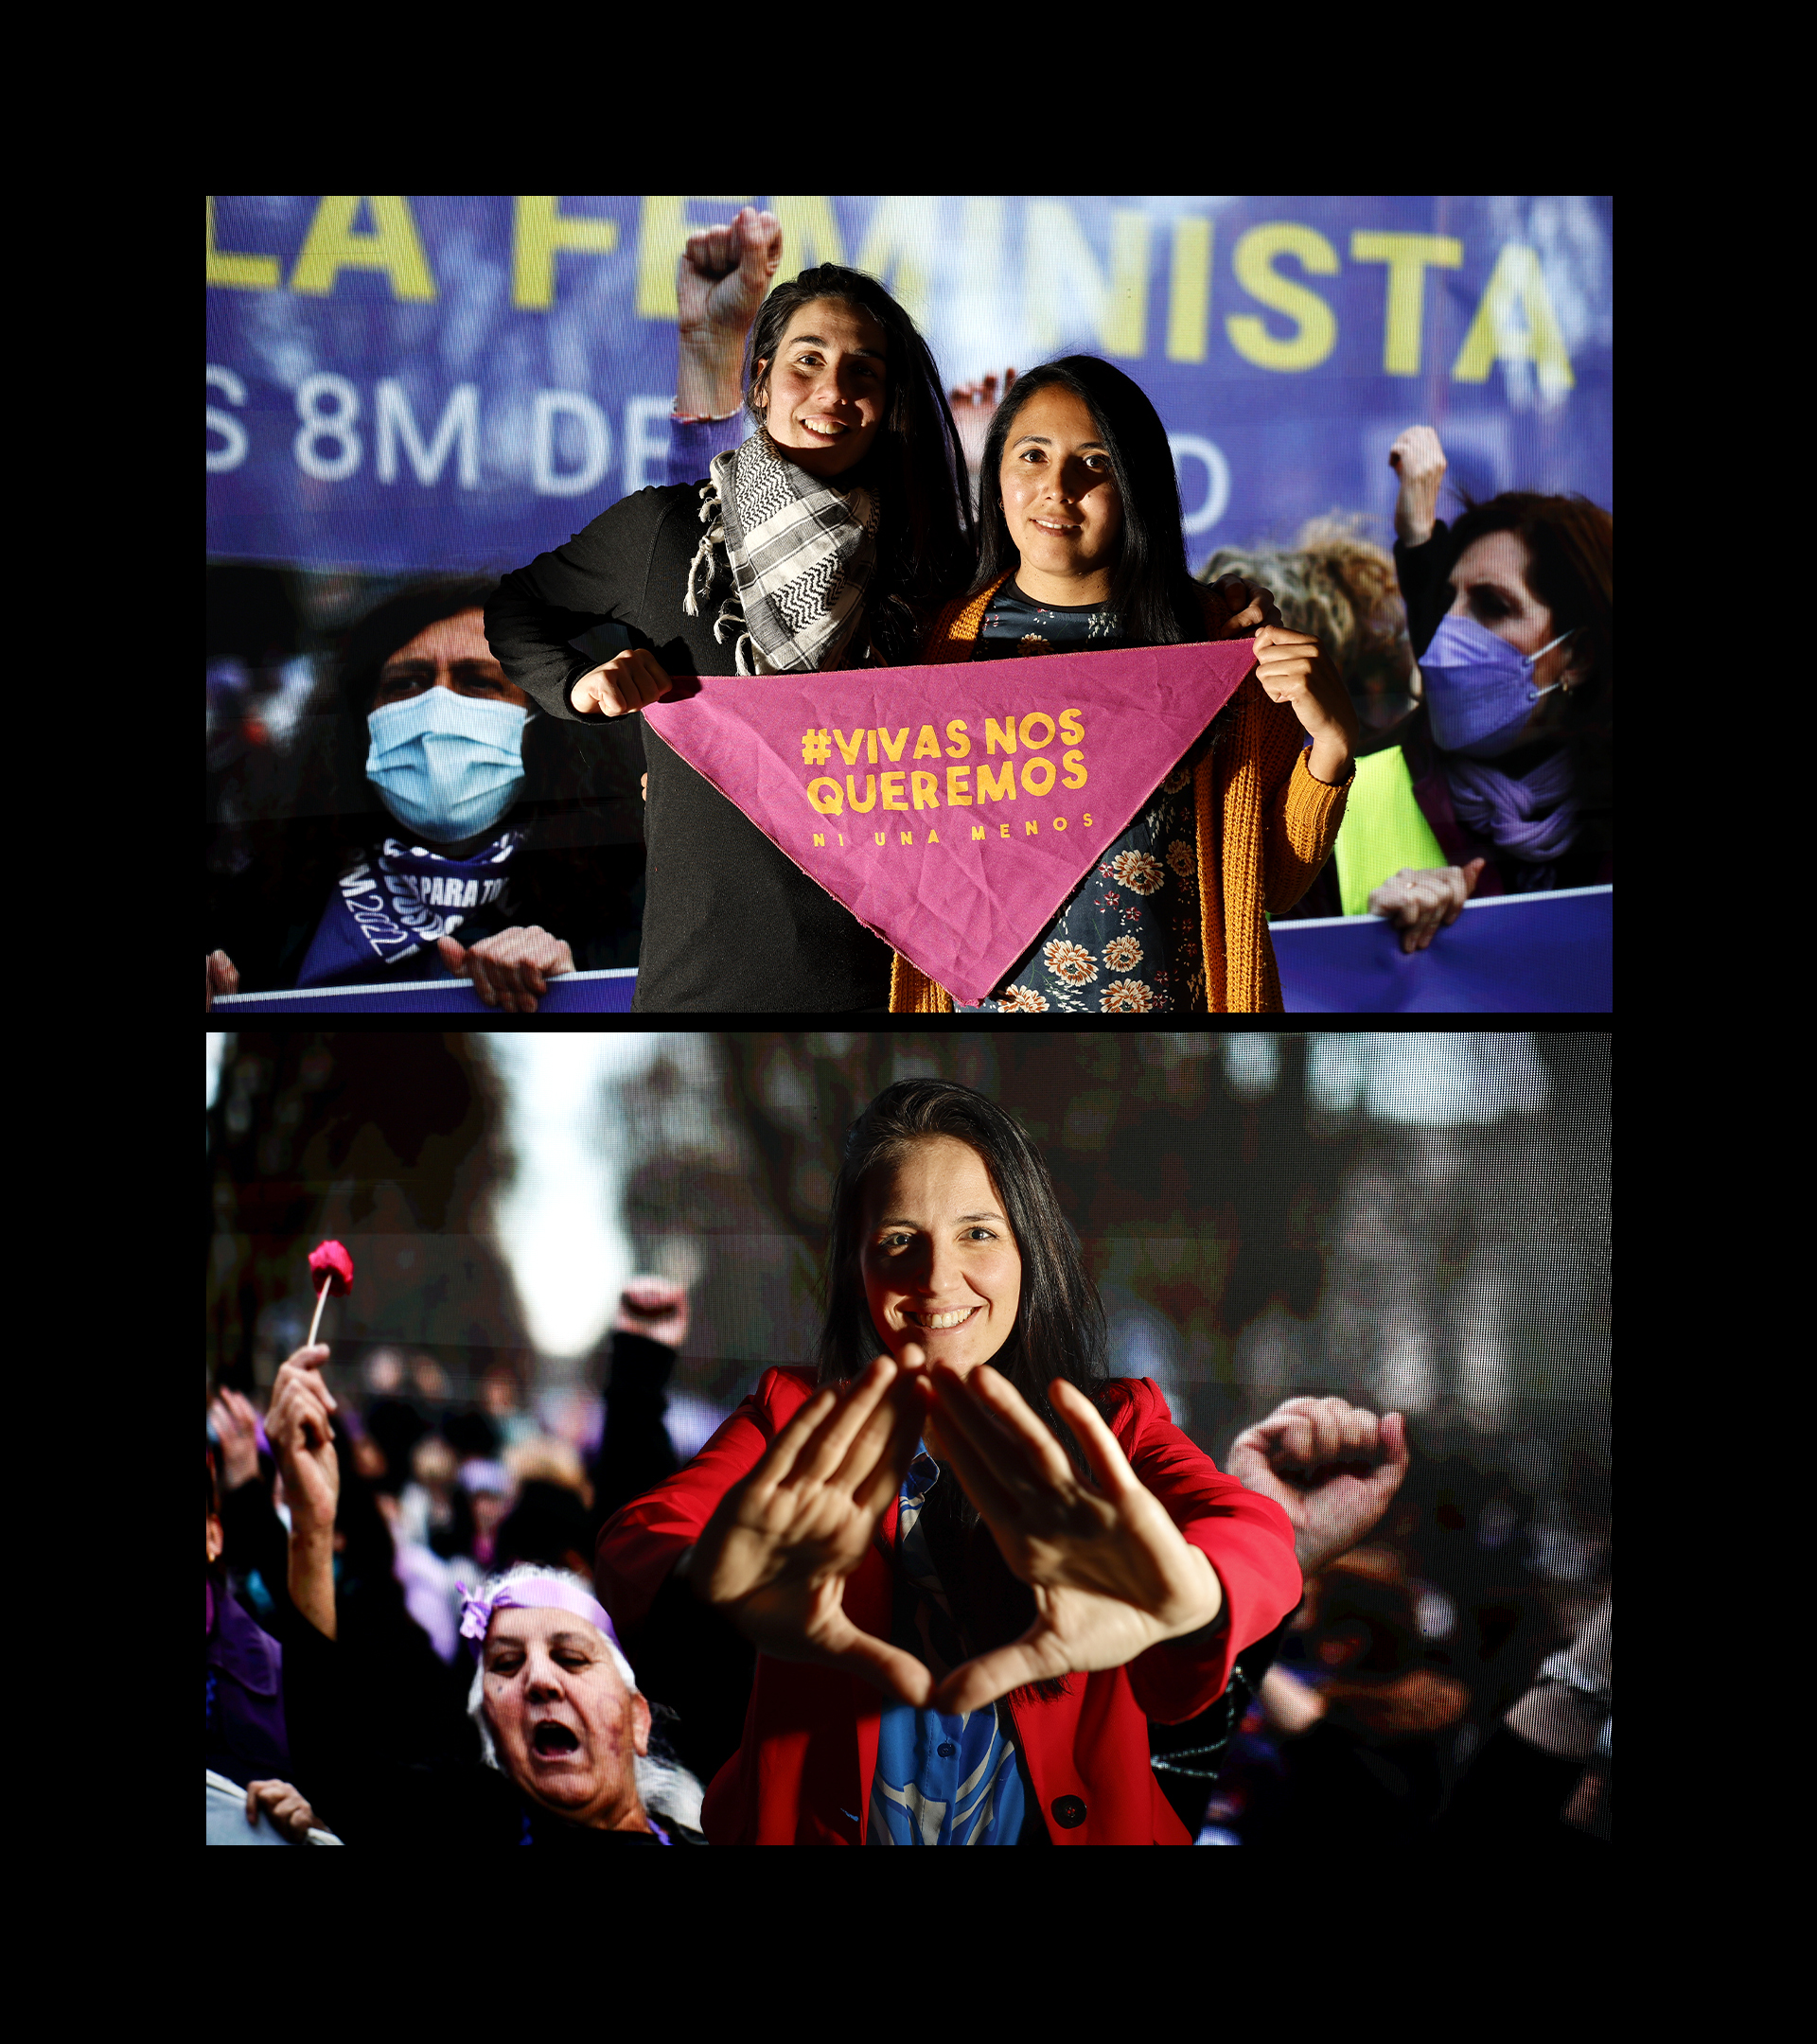 Portavoces de la Comisin 8M (arriba) y del Movimiento Feminista de Madrid.